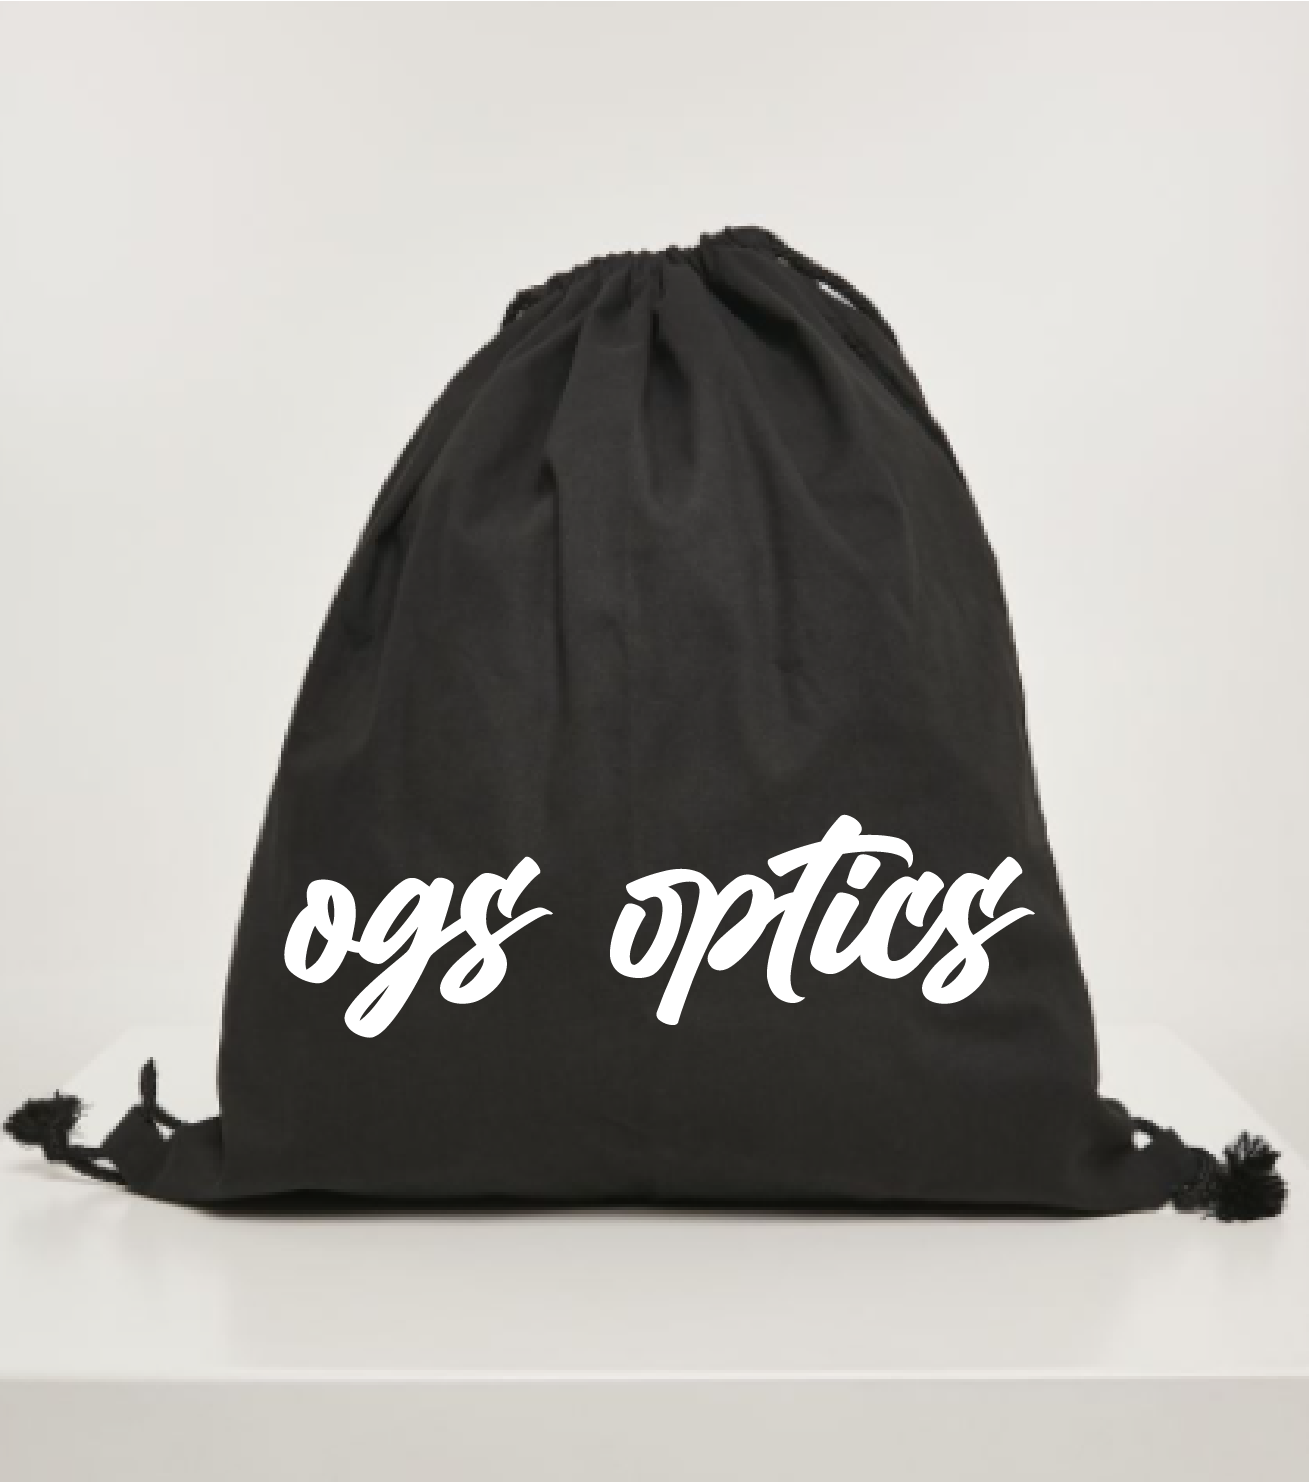 OGs Rave and Gym bag